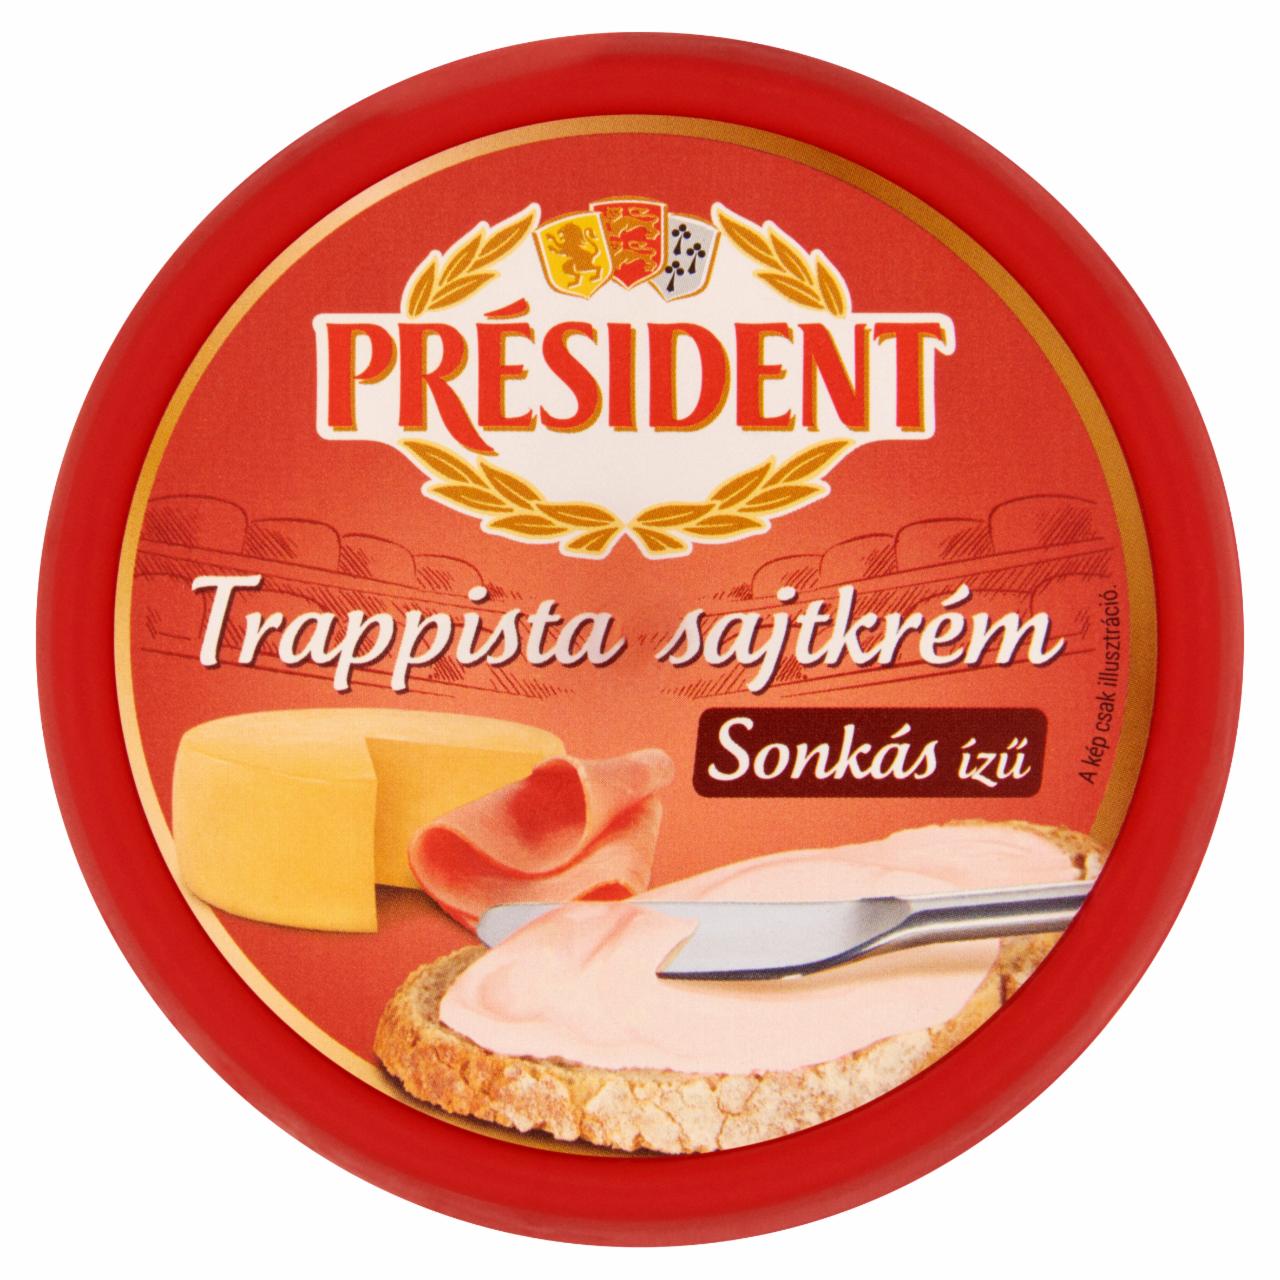 Képek - Président sonkás ízű trappista sajtkrém 125 g